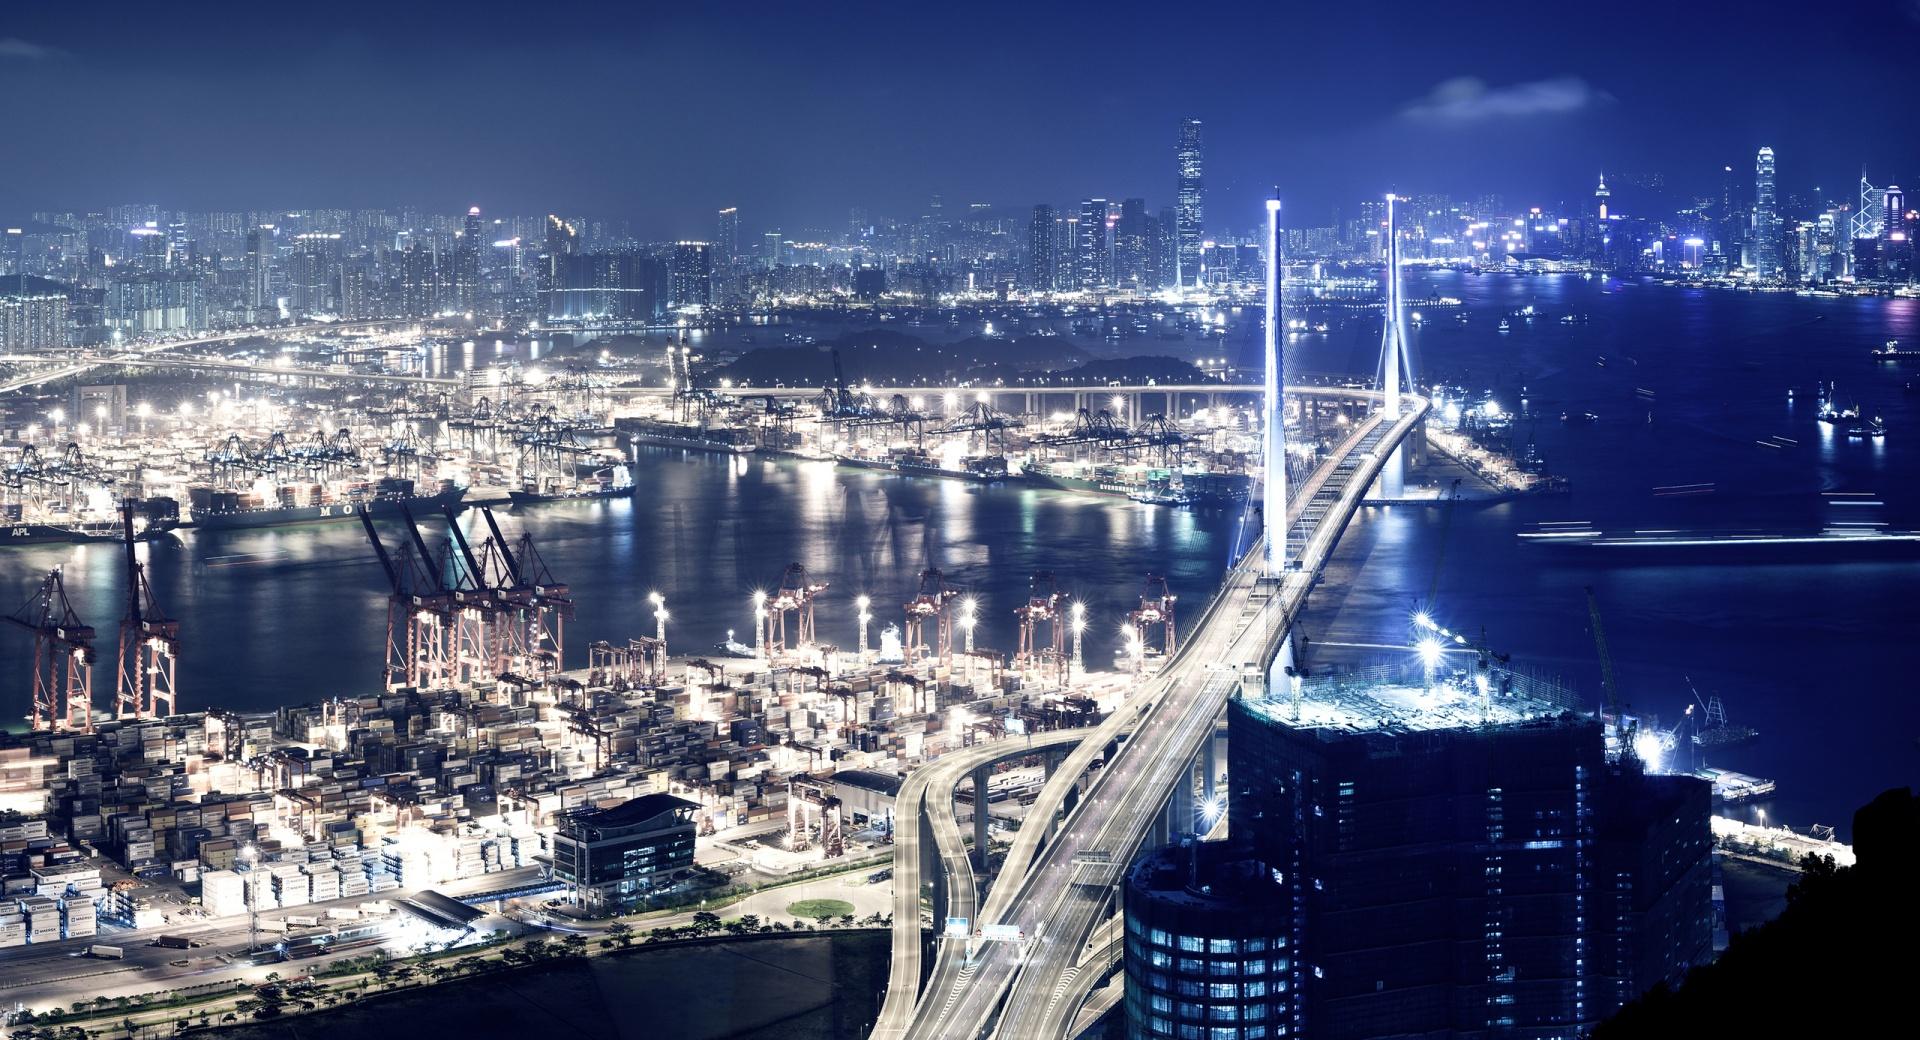 Panoramic View Of Hong Kong At Night at 2048 x 2048 iPad size wallpapers HD quality